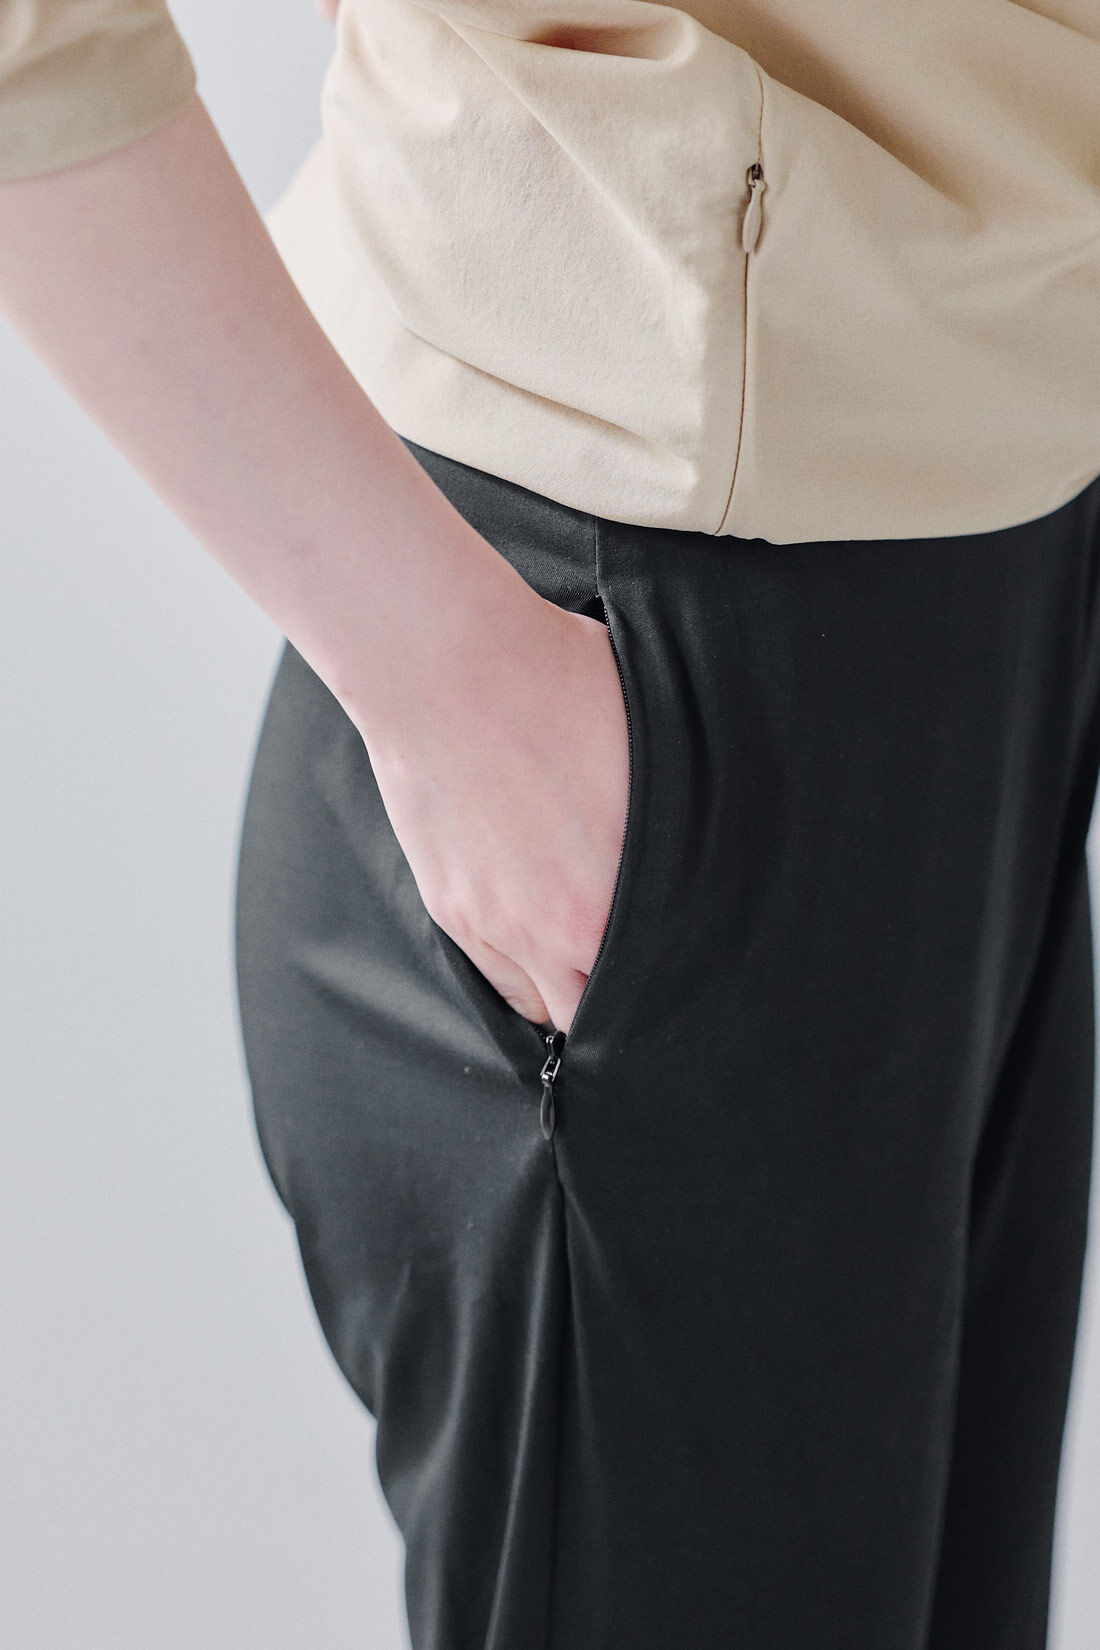 フェリシモMama|Moredde　ぴったりしすぎないのがうれしい　UVカットラッシュガードパンツ〈ブラック〉|片方にファスナー付きポケットがあって便利